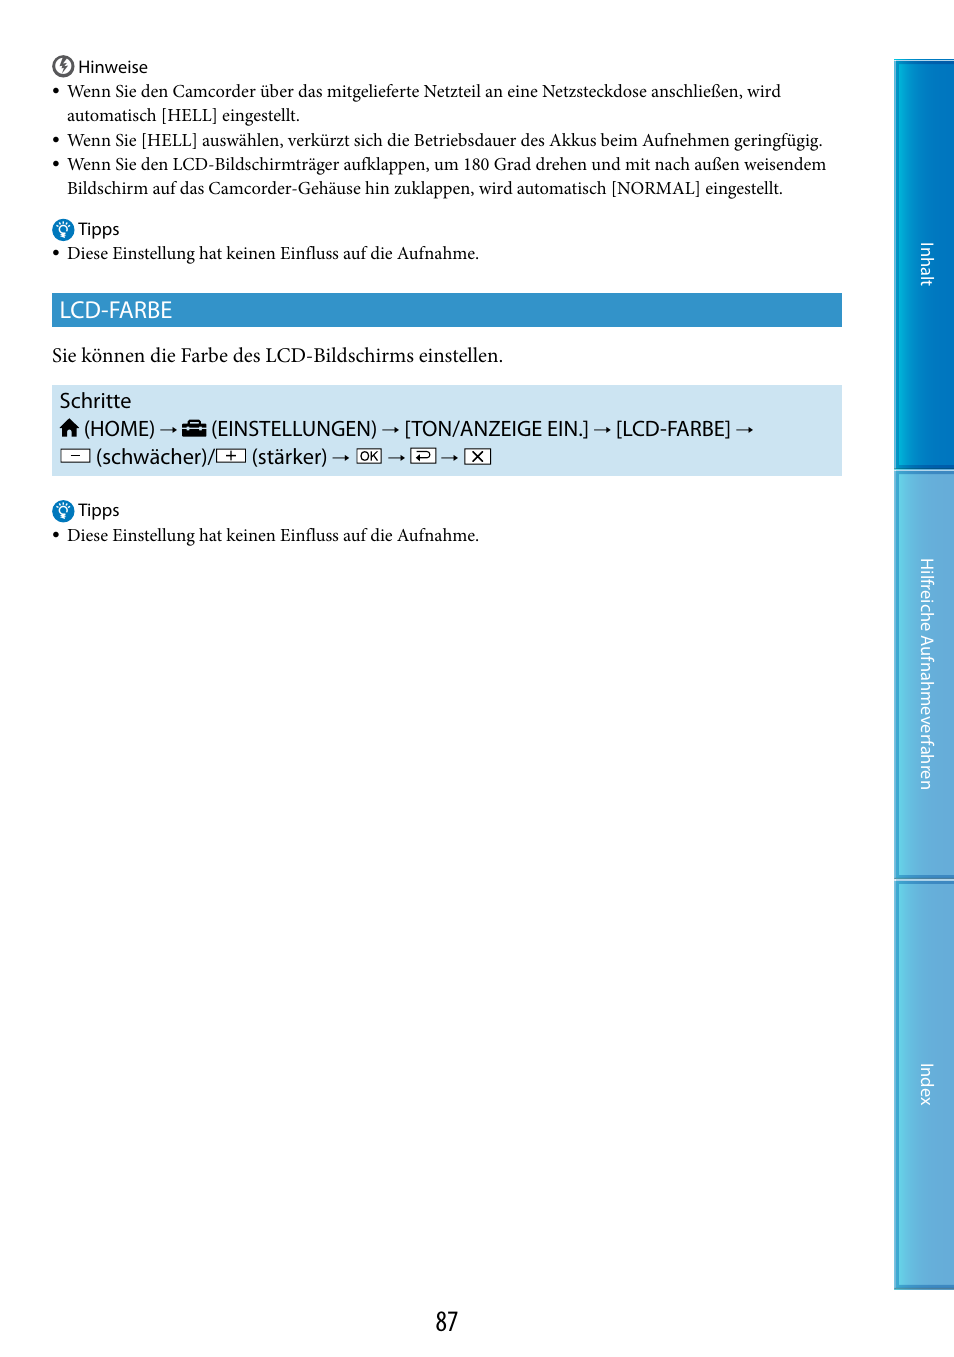 Lcd-farbe, Schritte (home), Einstellungen) | Ton/anzeige ein, Schwächer)/ (stärker) | Sony HDR-CX100E Benutzerhandbuch | Seite 87 / 127